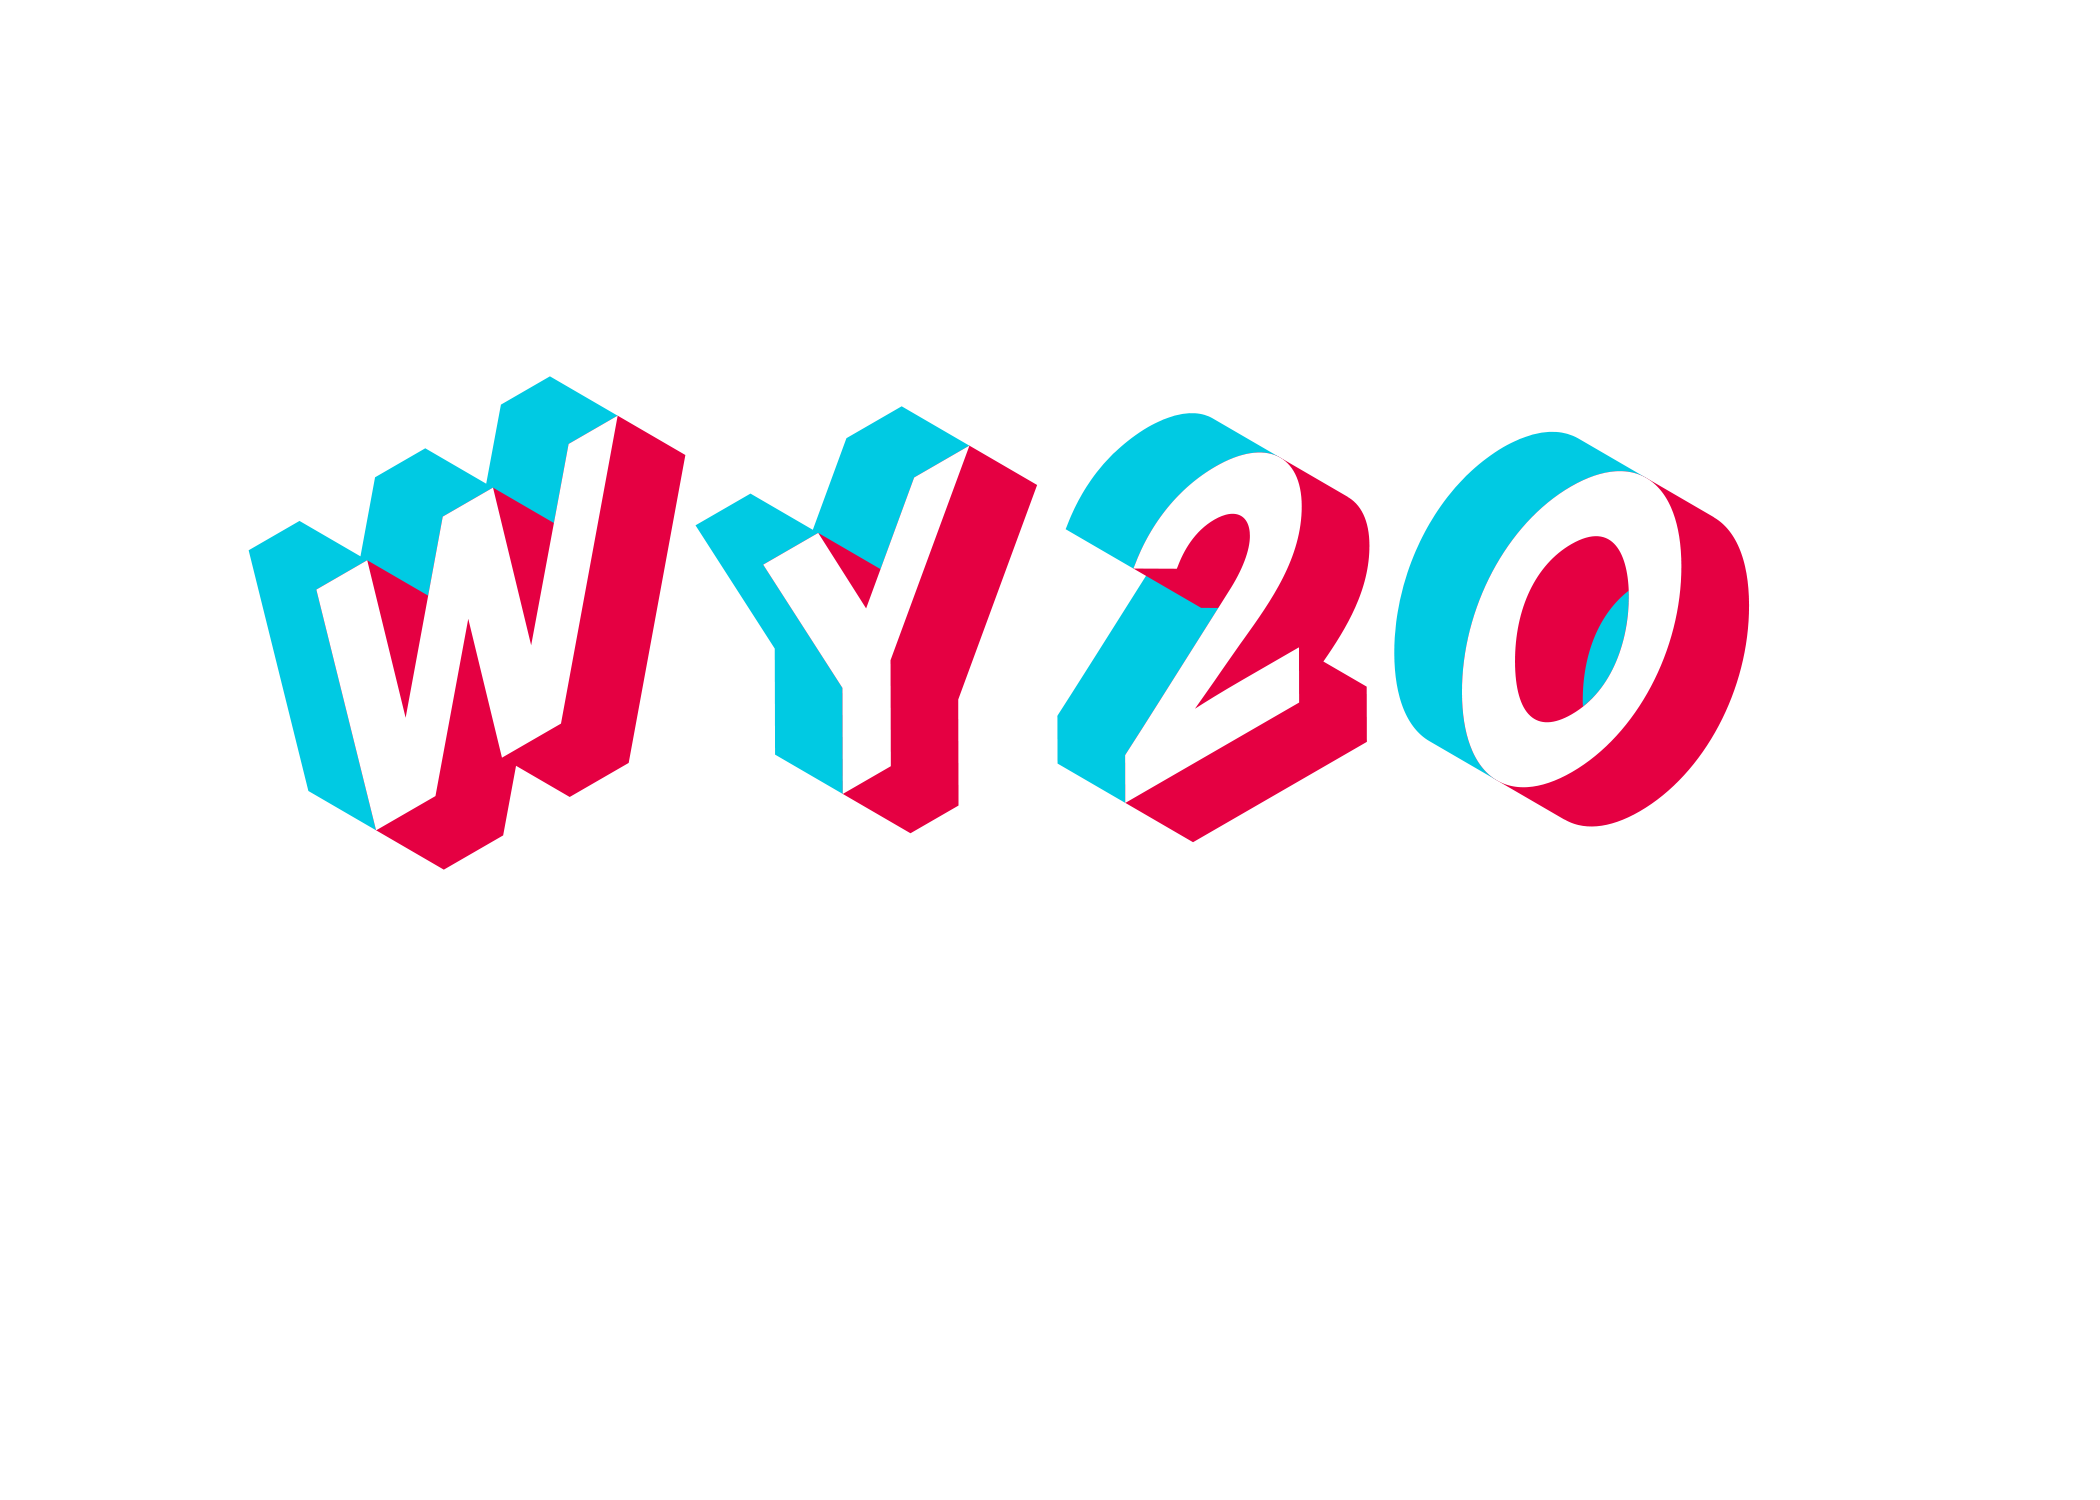 WY20